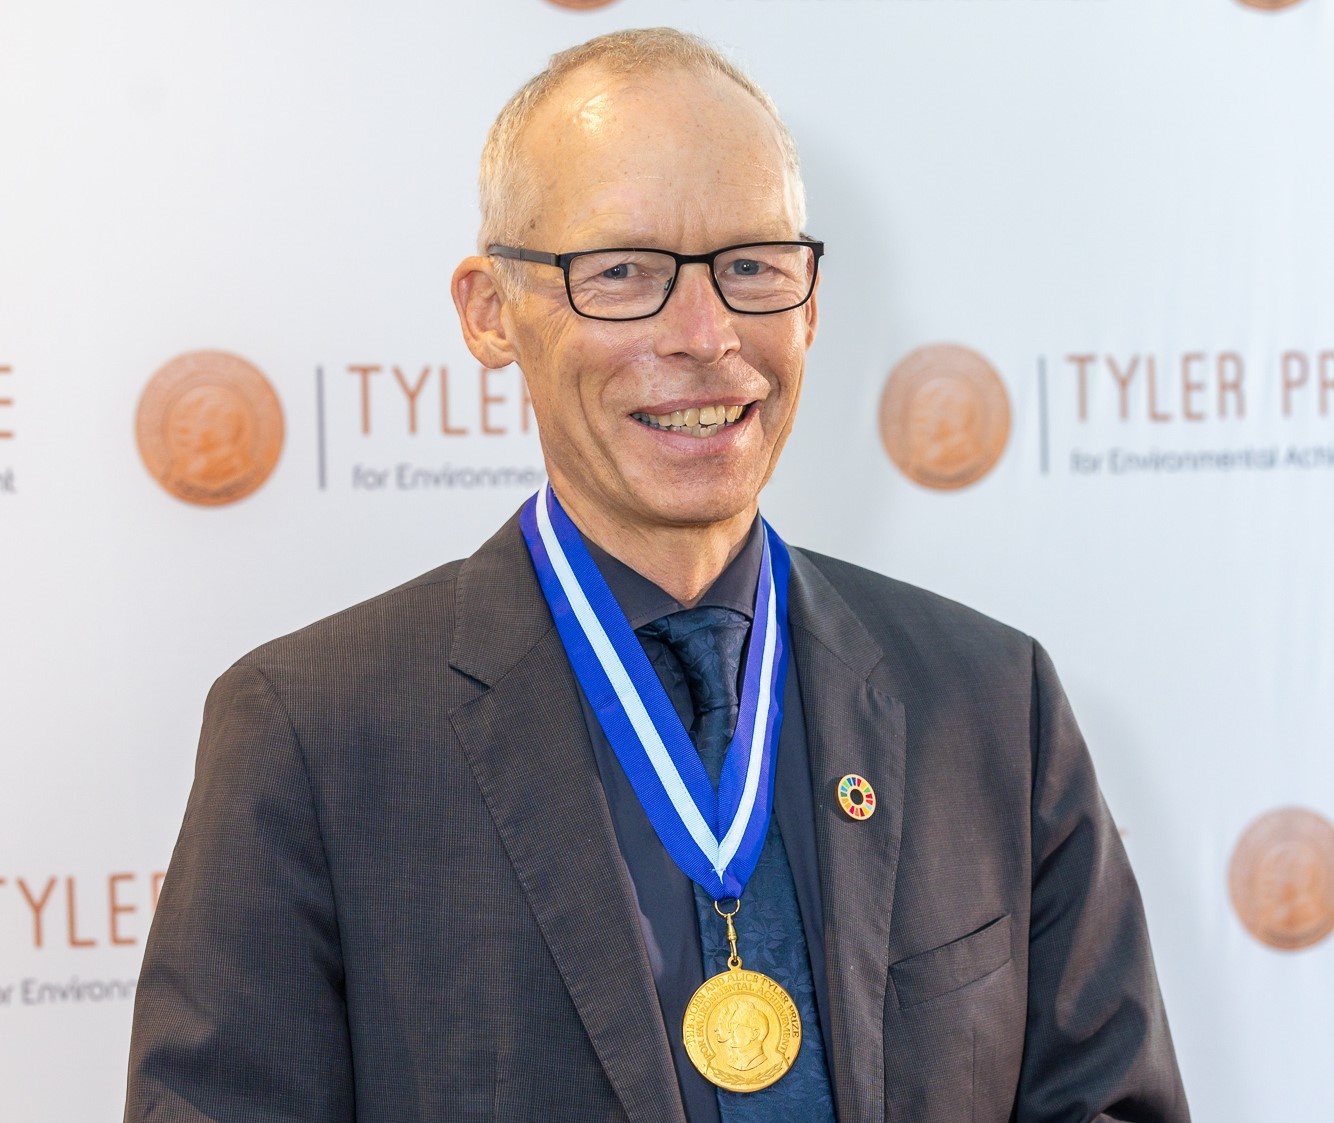 约翰·罗克斯特罗姆在波茨坦授予泰勒环境成就奖